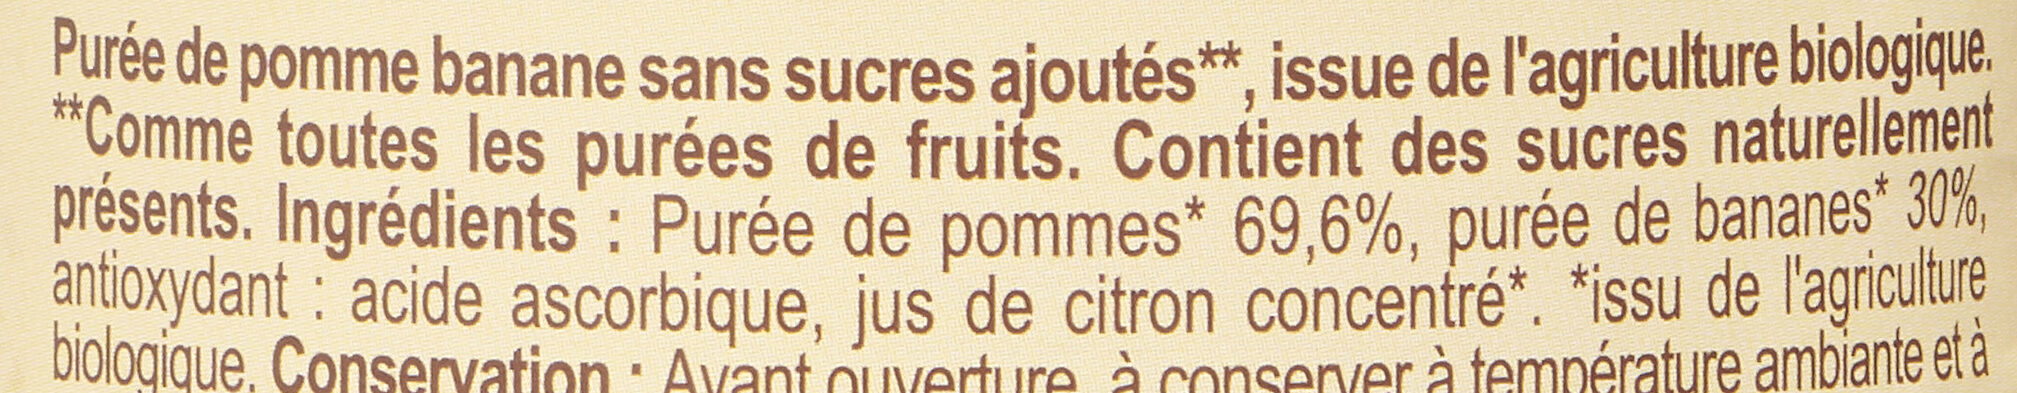 Pomme Banane Sans sucres ajoutés** - المكونات - fr